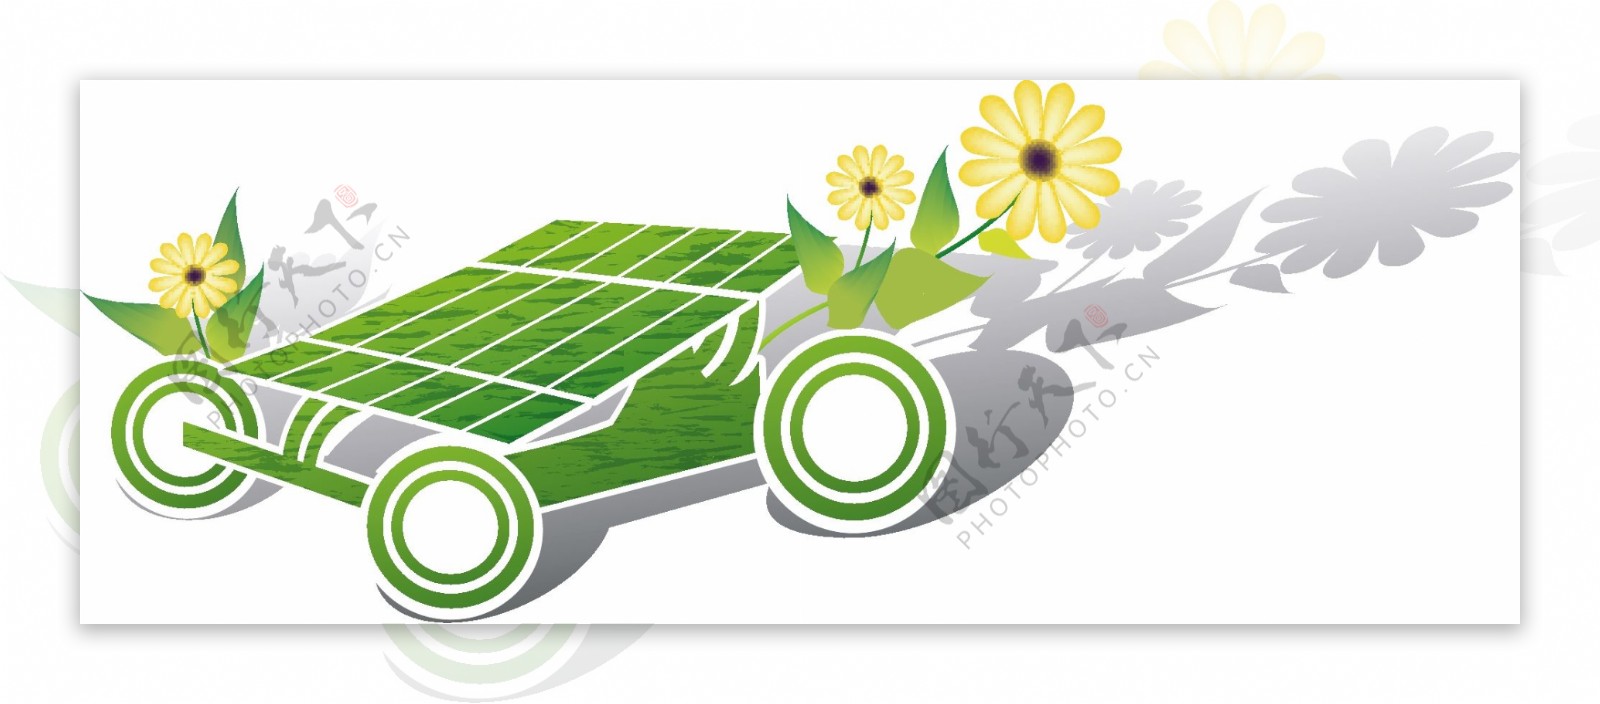 太阳能电池小车图片